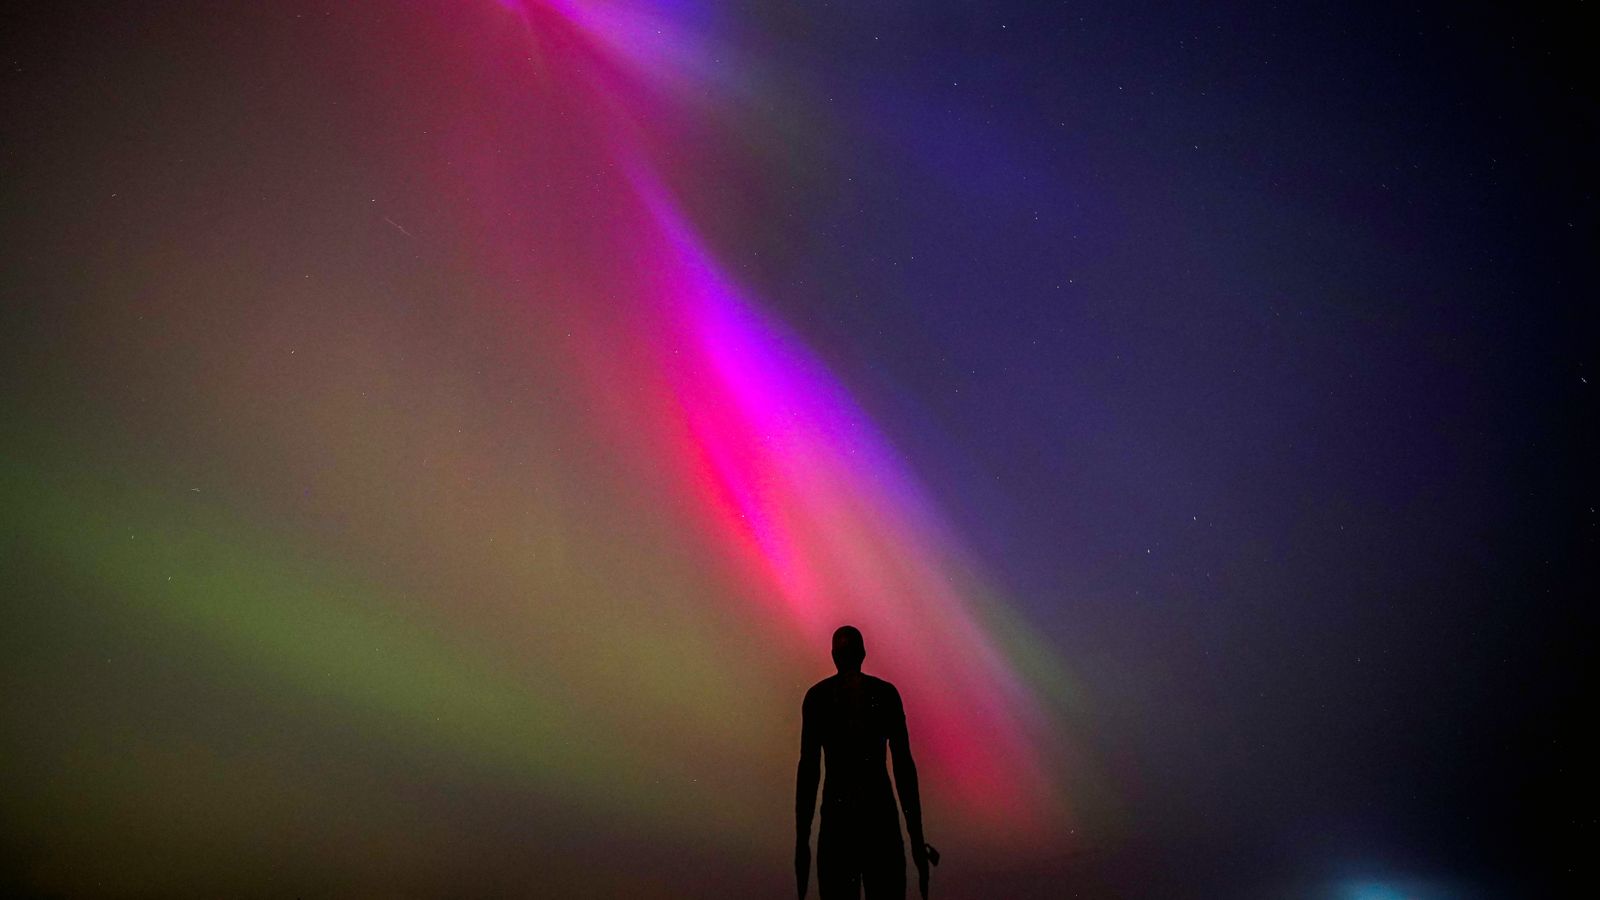 Les aurores boréales du Royaume-Uni pourraient être vues à nouveau d’ici quelques semaines  Actualités scientifiques et technologiques